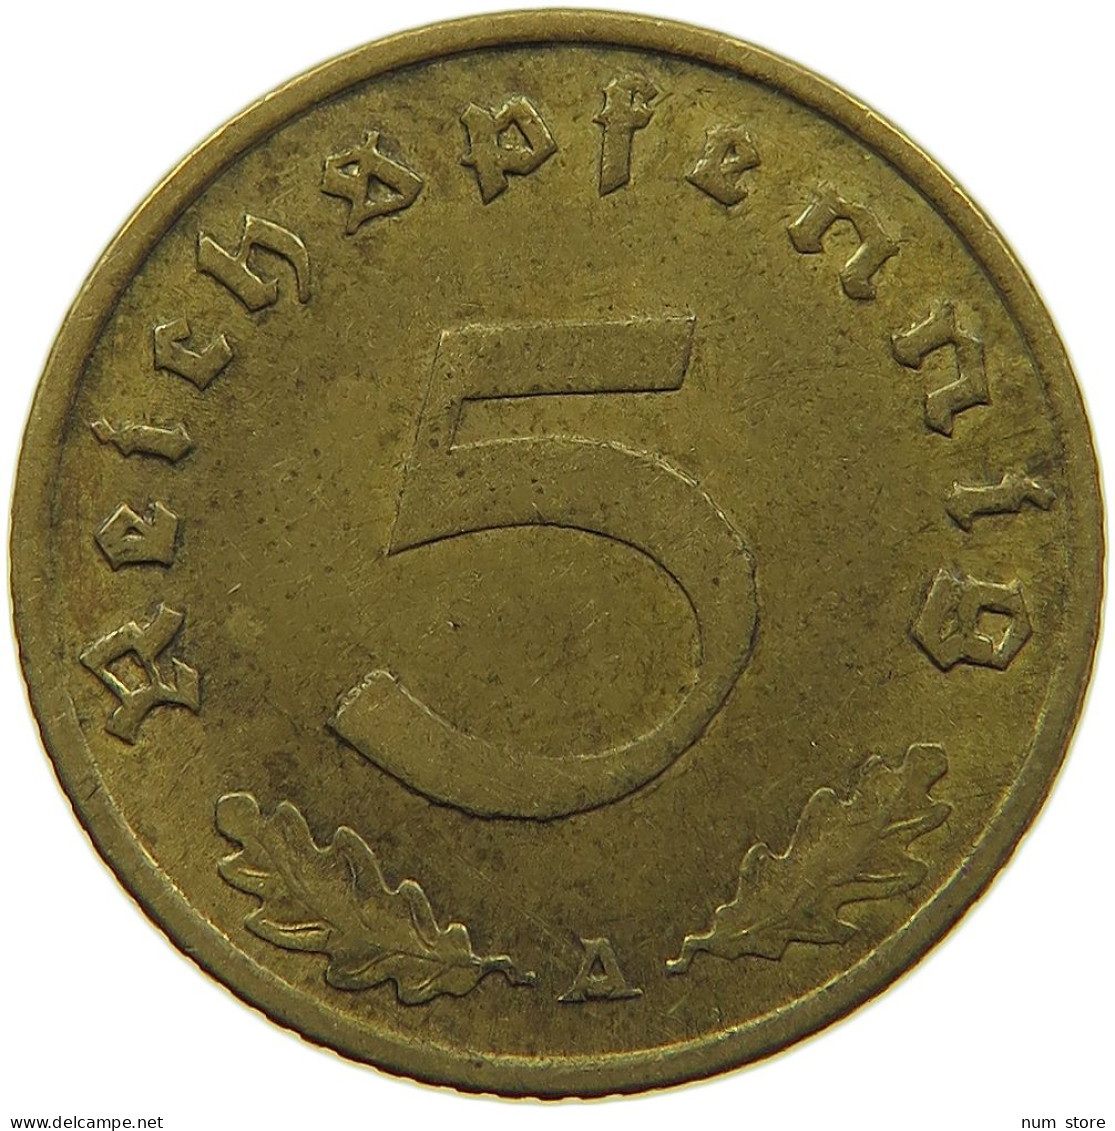 GERMANY 5 REICHSPFENNIG 1938 A ERROR MINT MARK #s091 0651 - 5 Reichspfennig